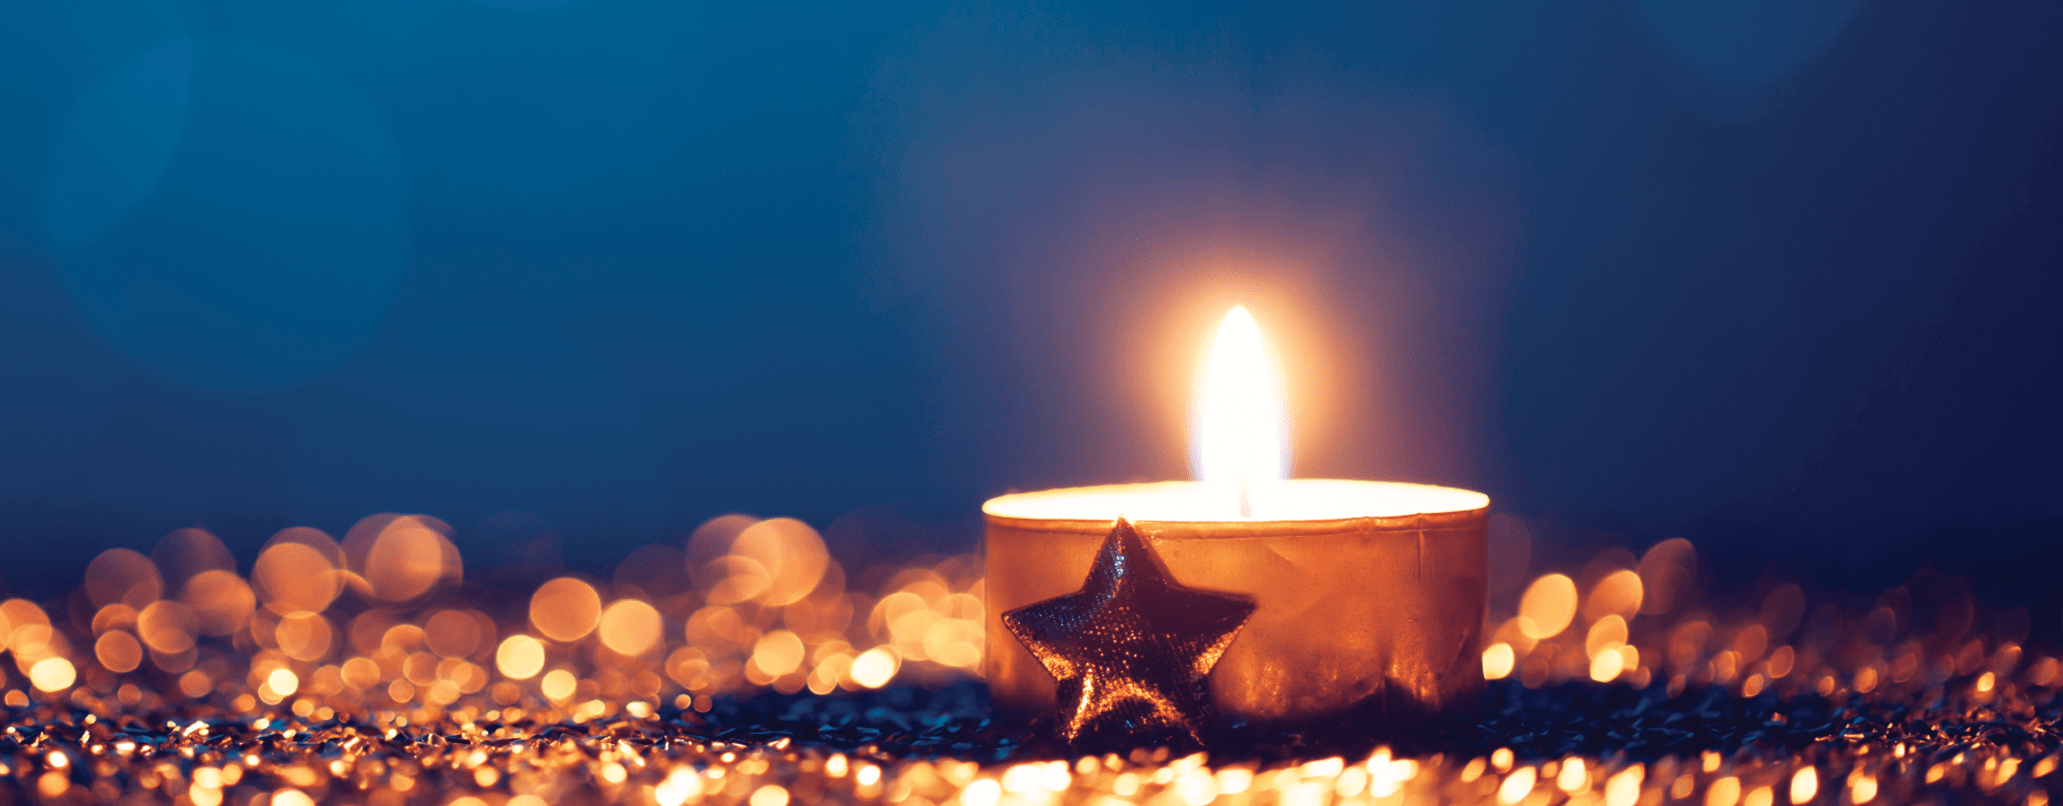 decoração de natal com velas